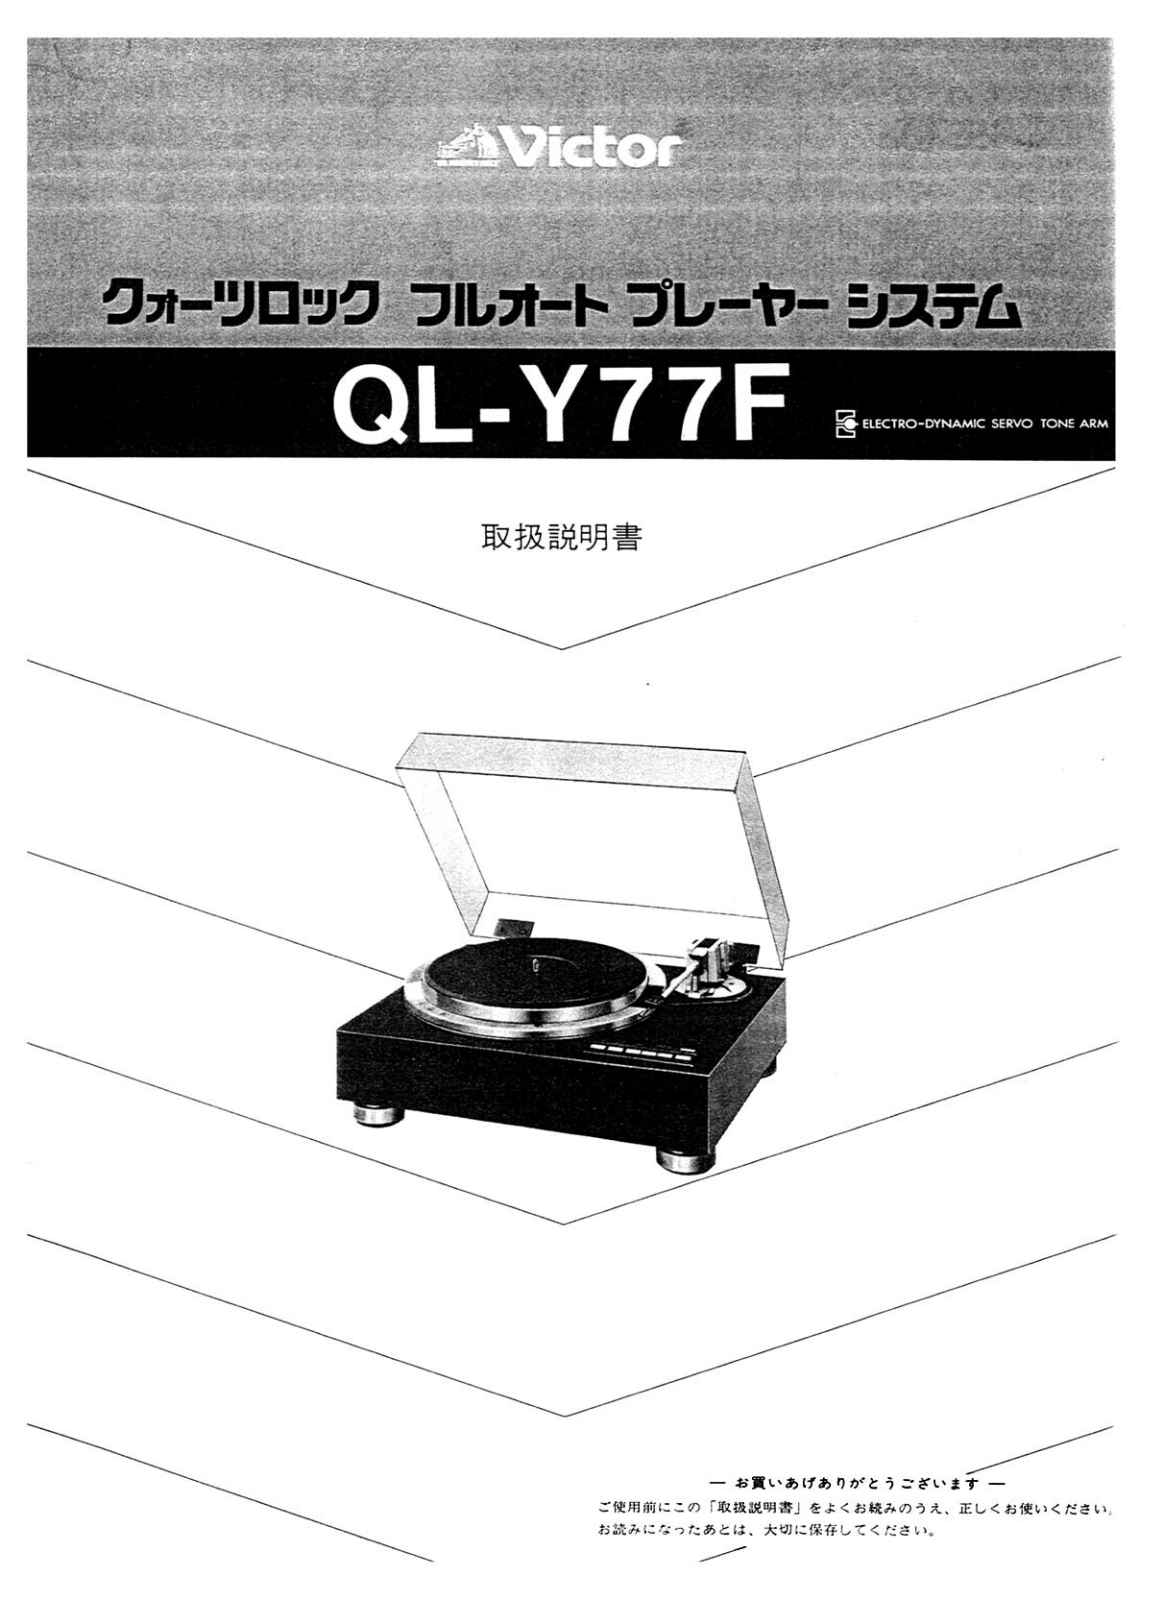 Jvc QL-Y77-F Owners Manual